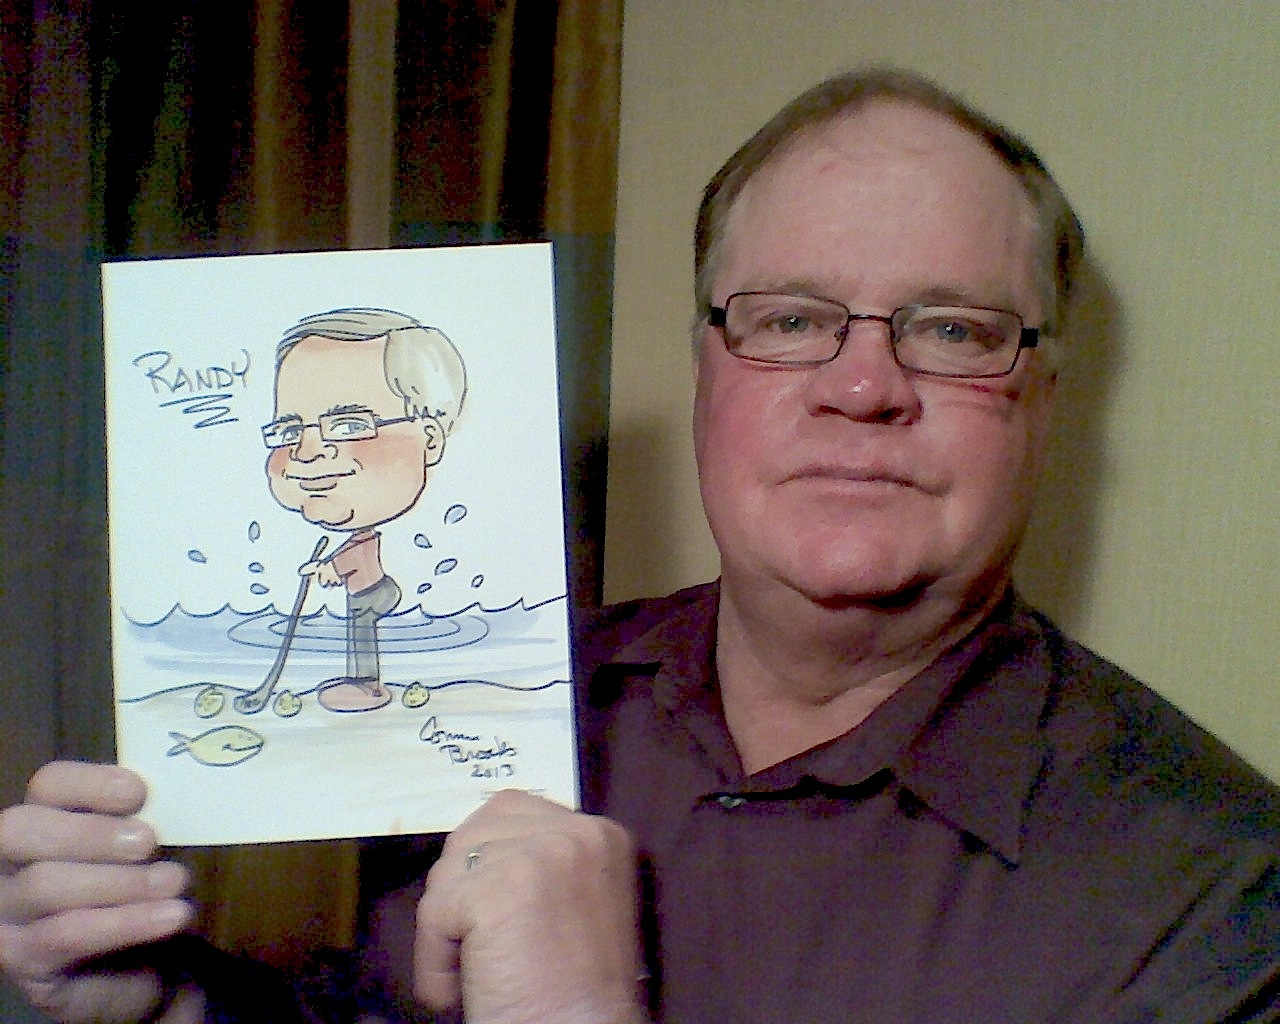 Randy caricature